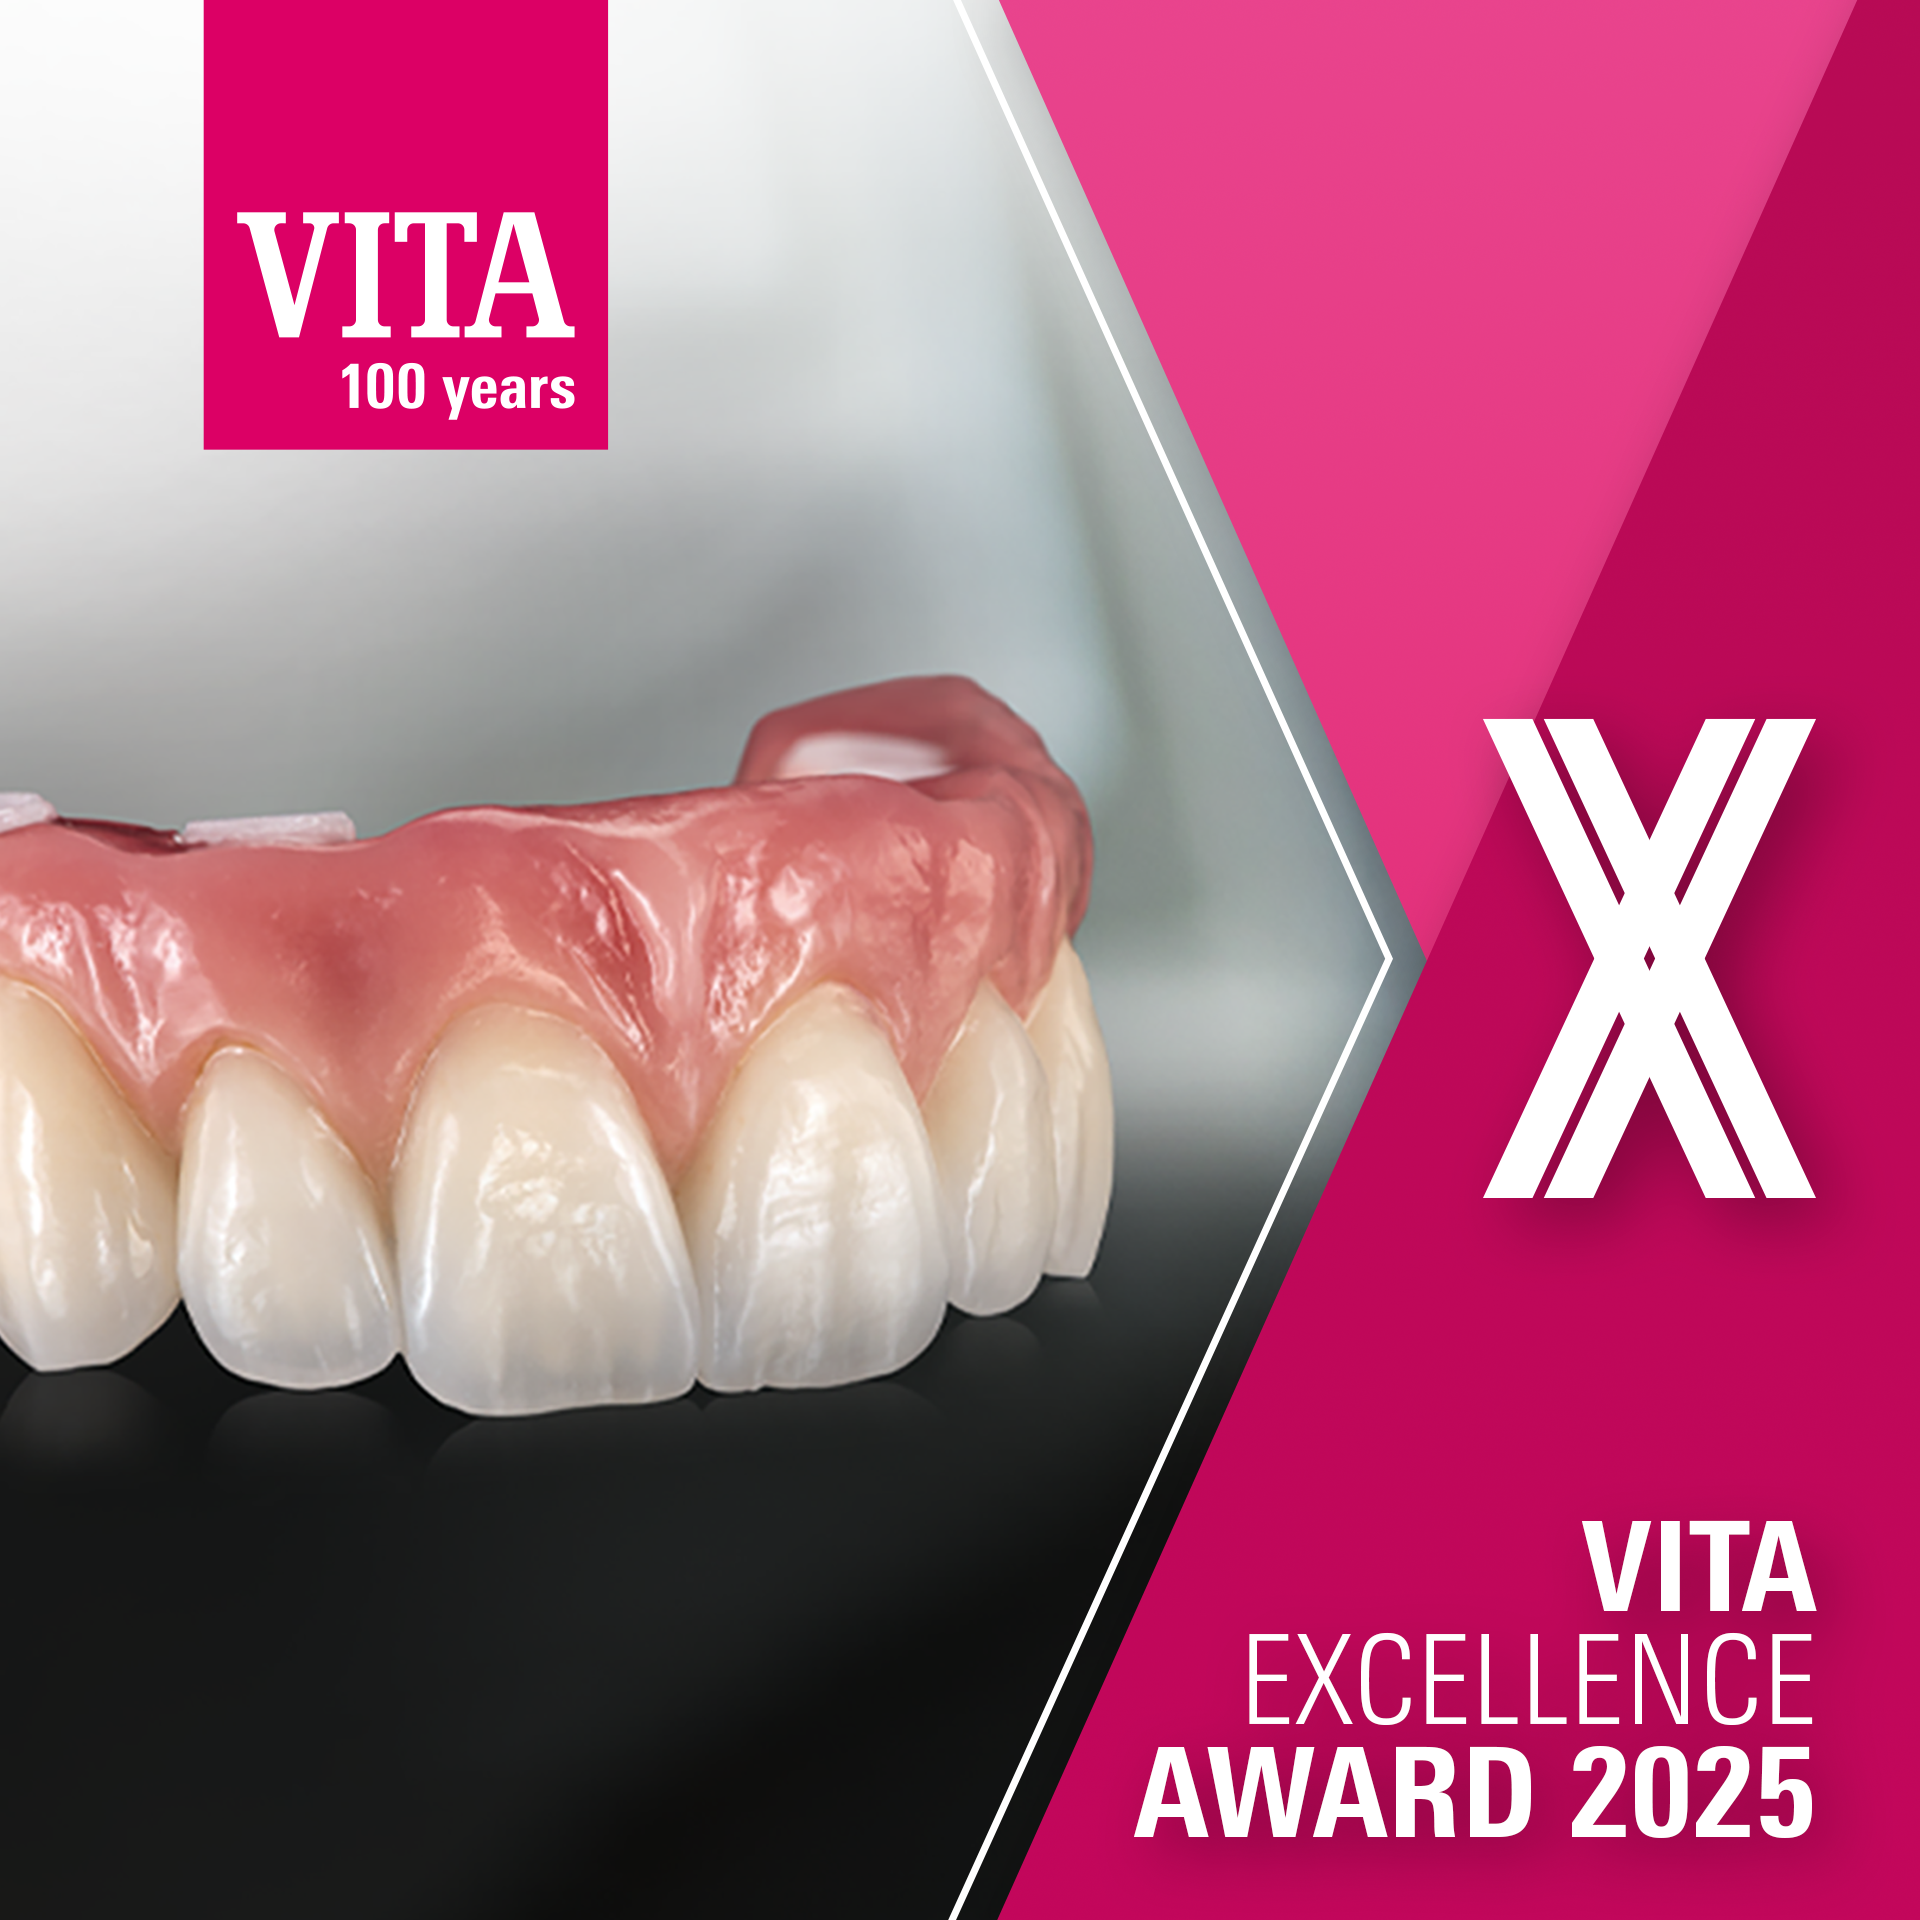 VITA Excellence Award 2025 1920x1920-1